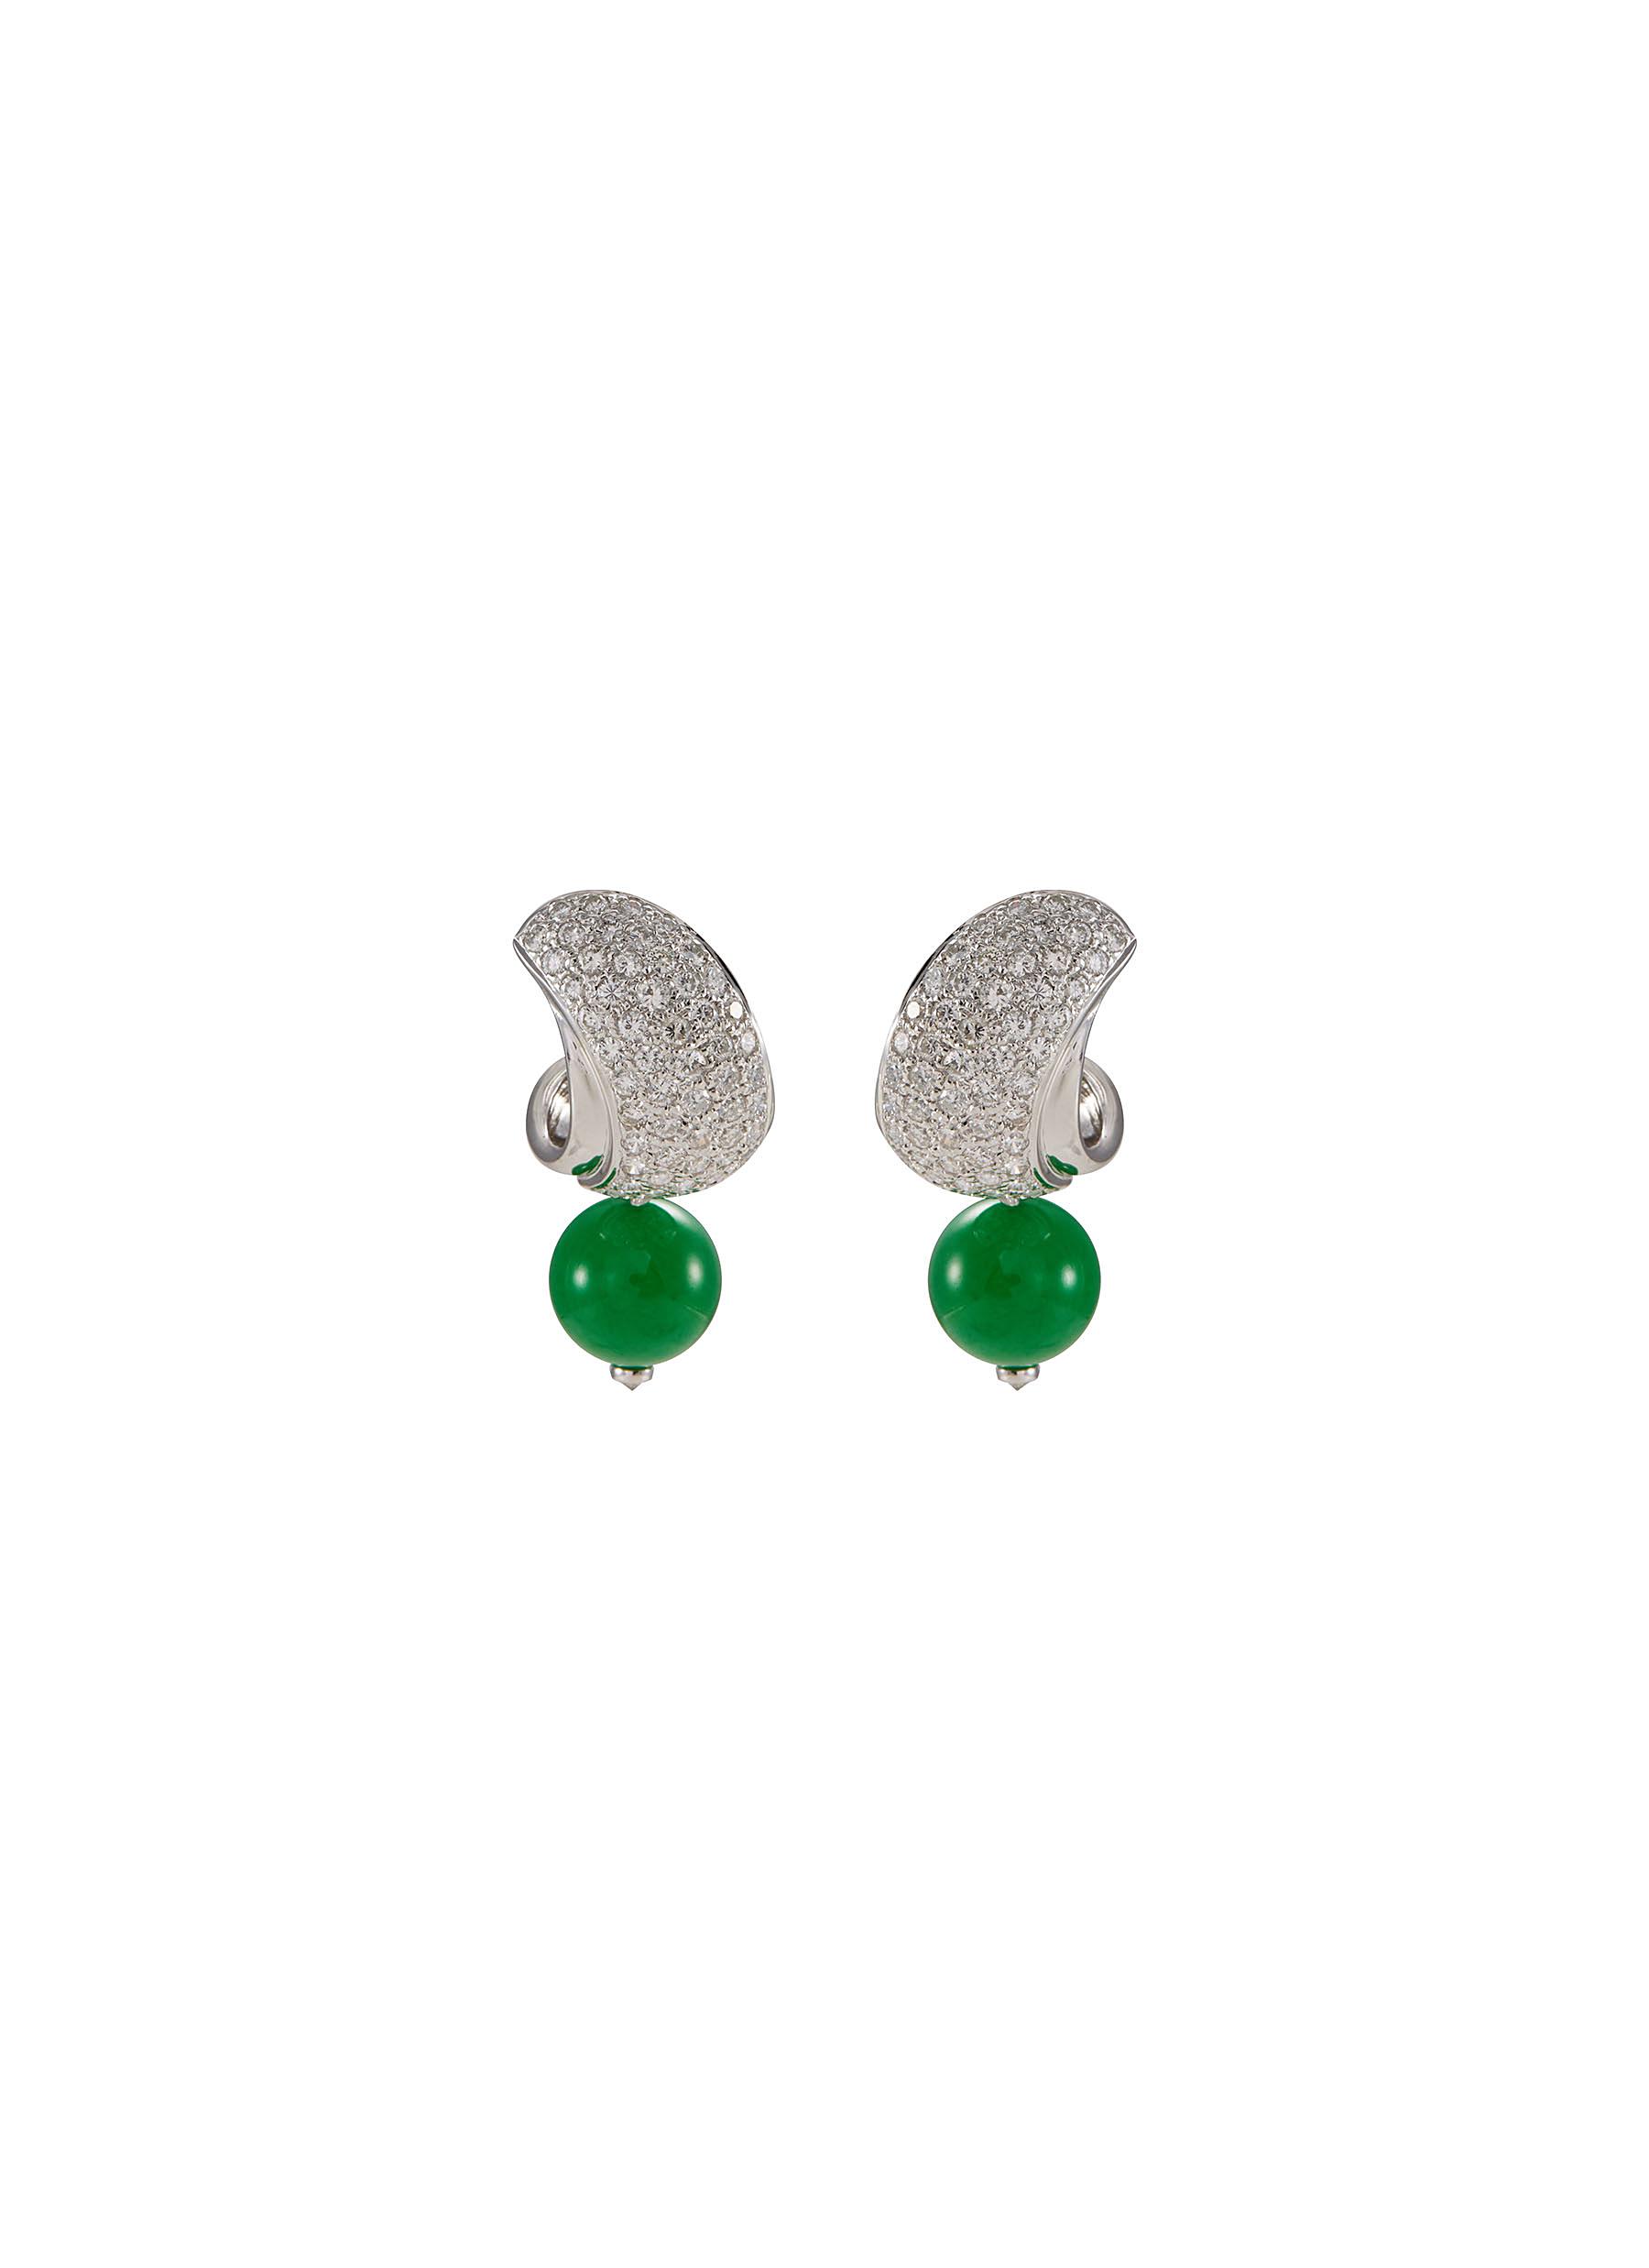 Diamond jade 18k white gold earrings